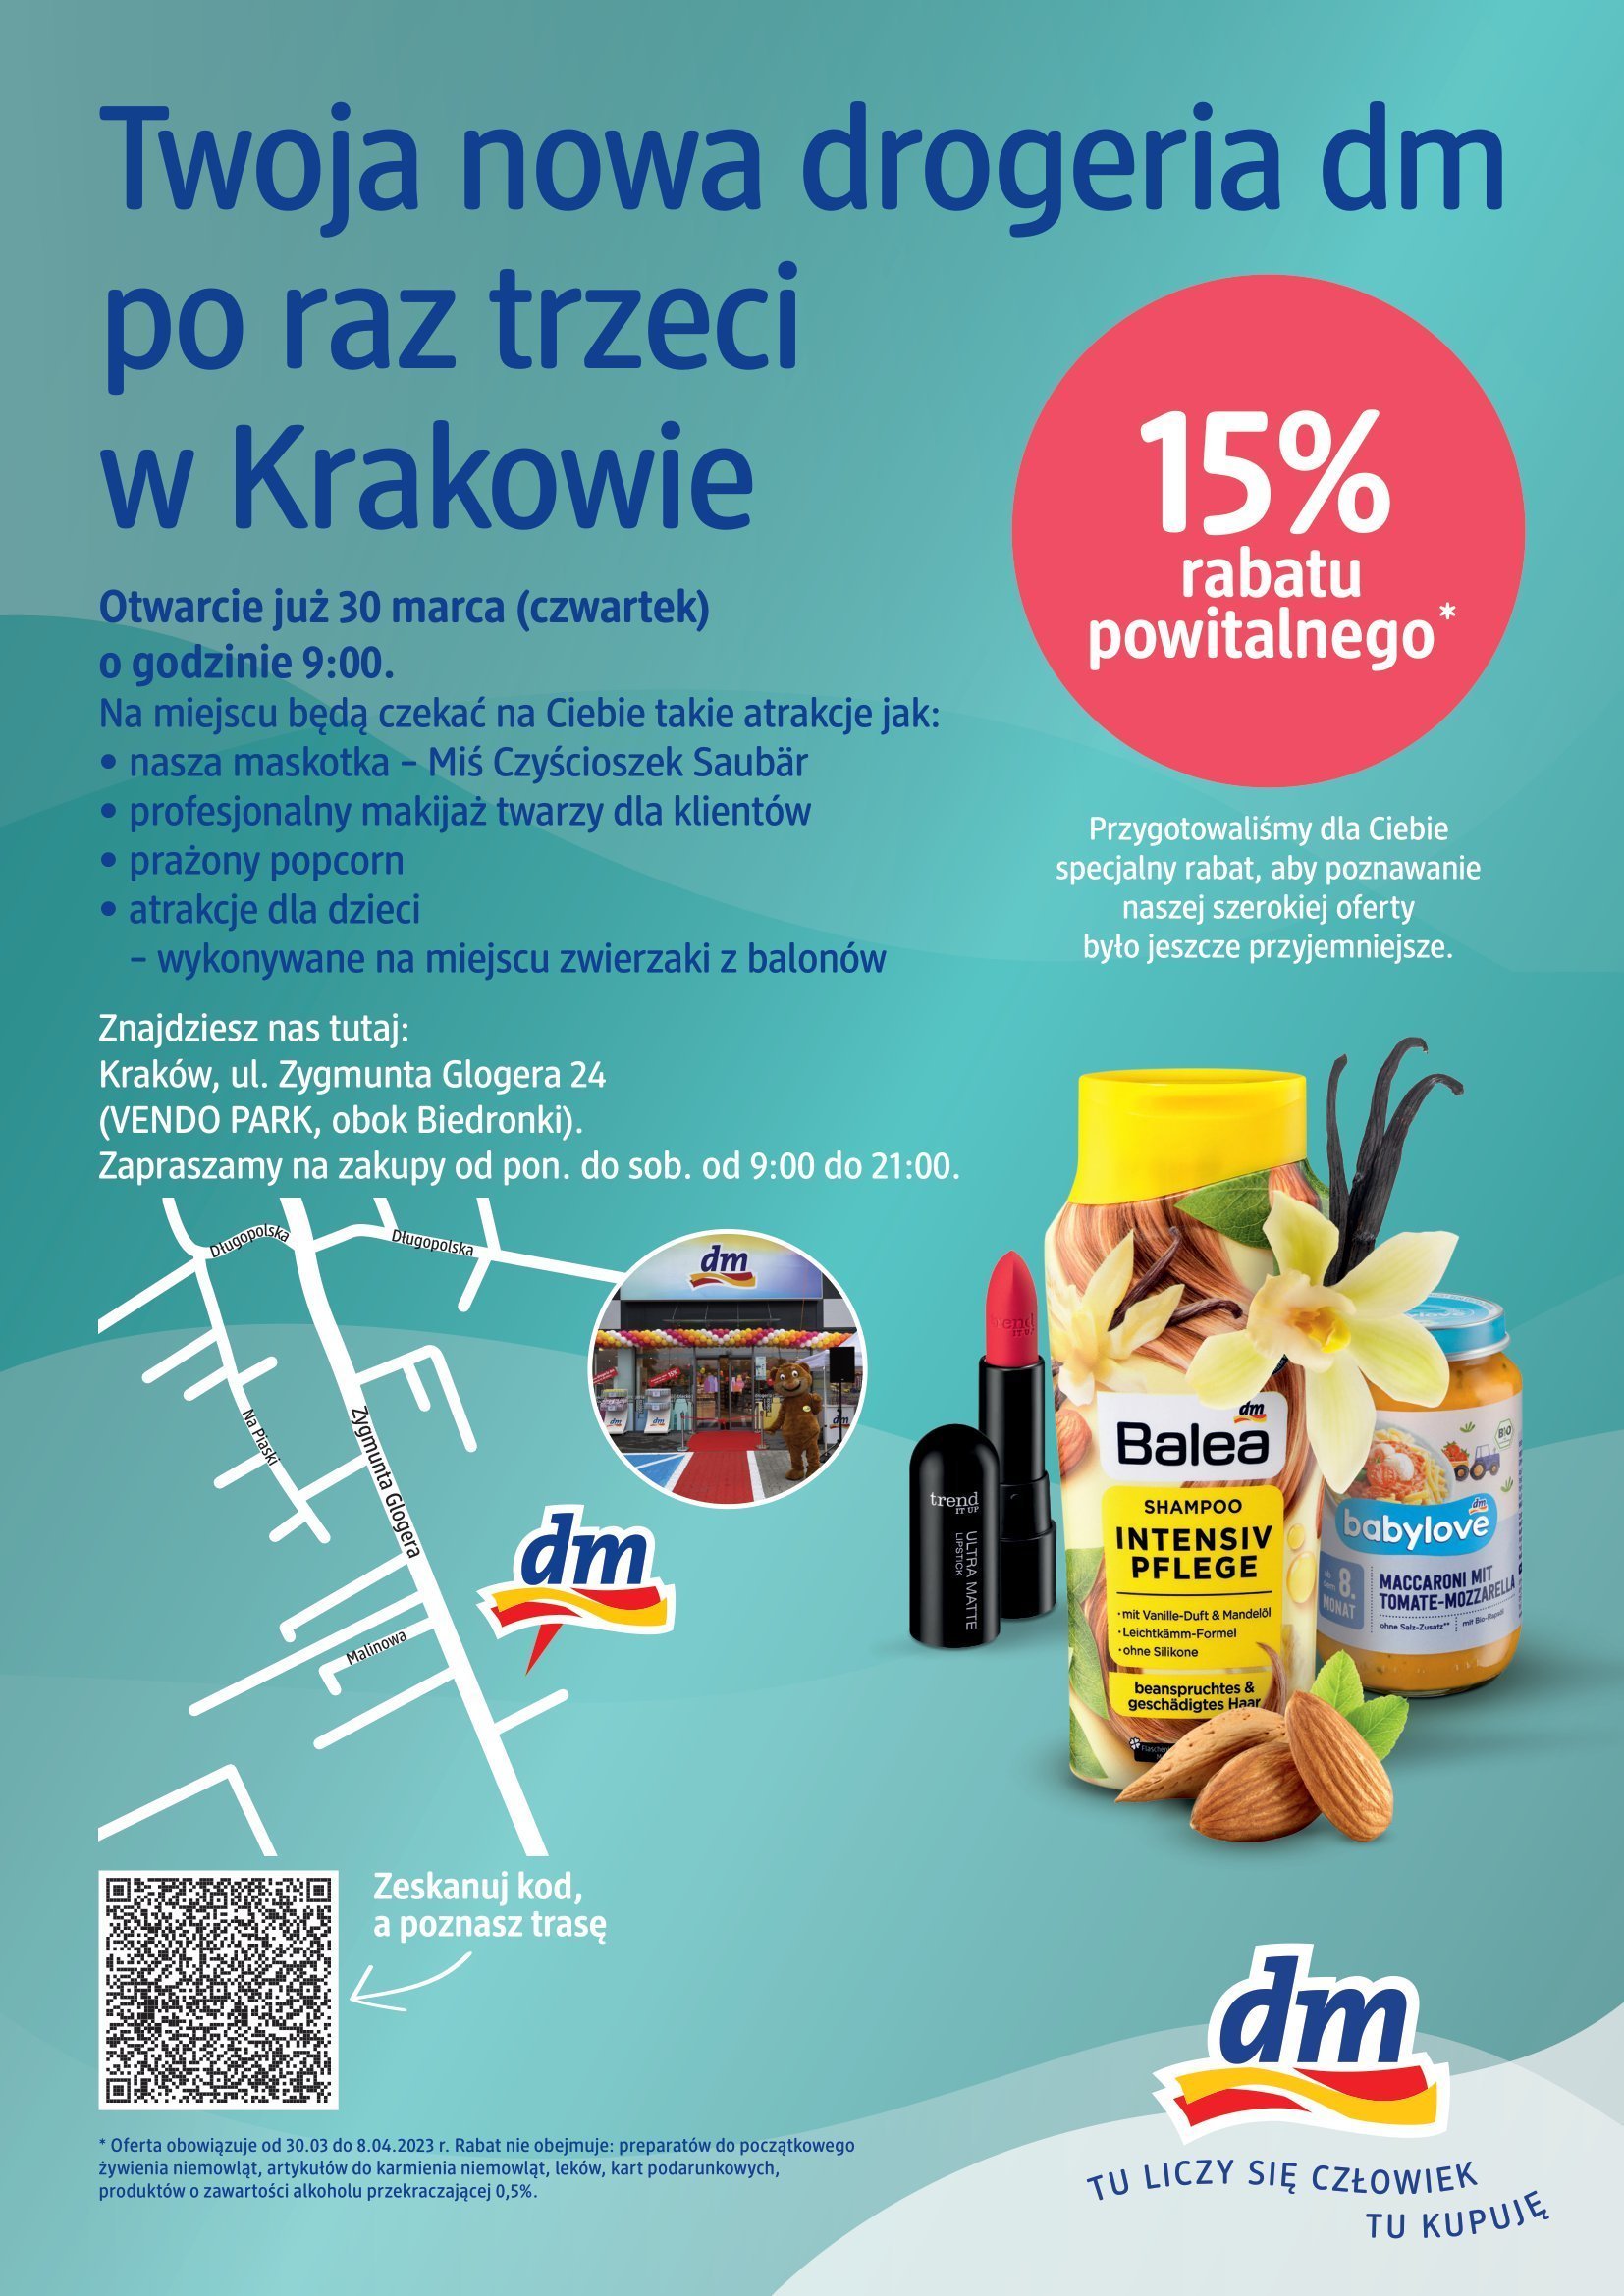 Drogerie DM - Kraków wielkie otwarcie Drogerii dm! - strona 1